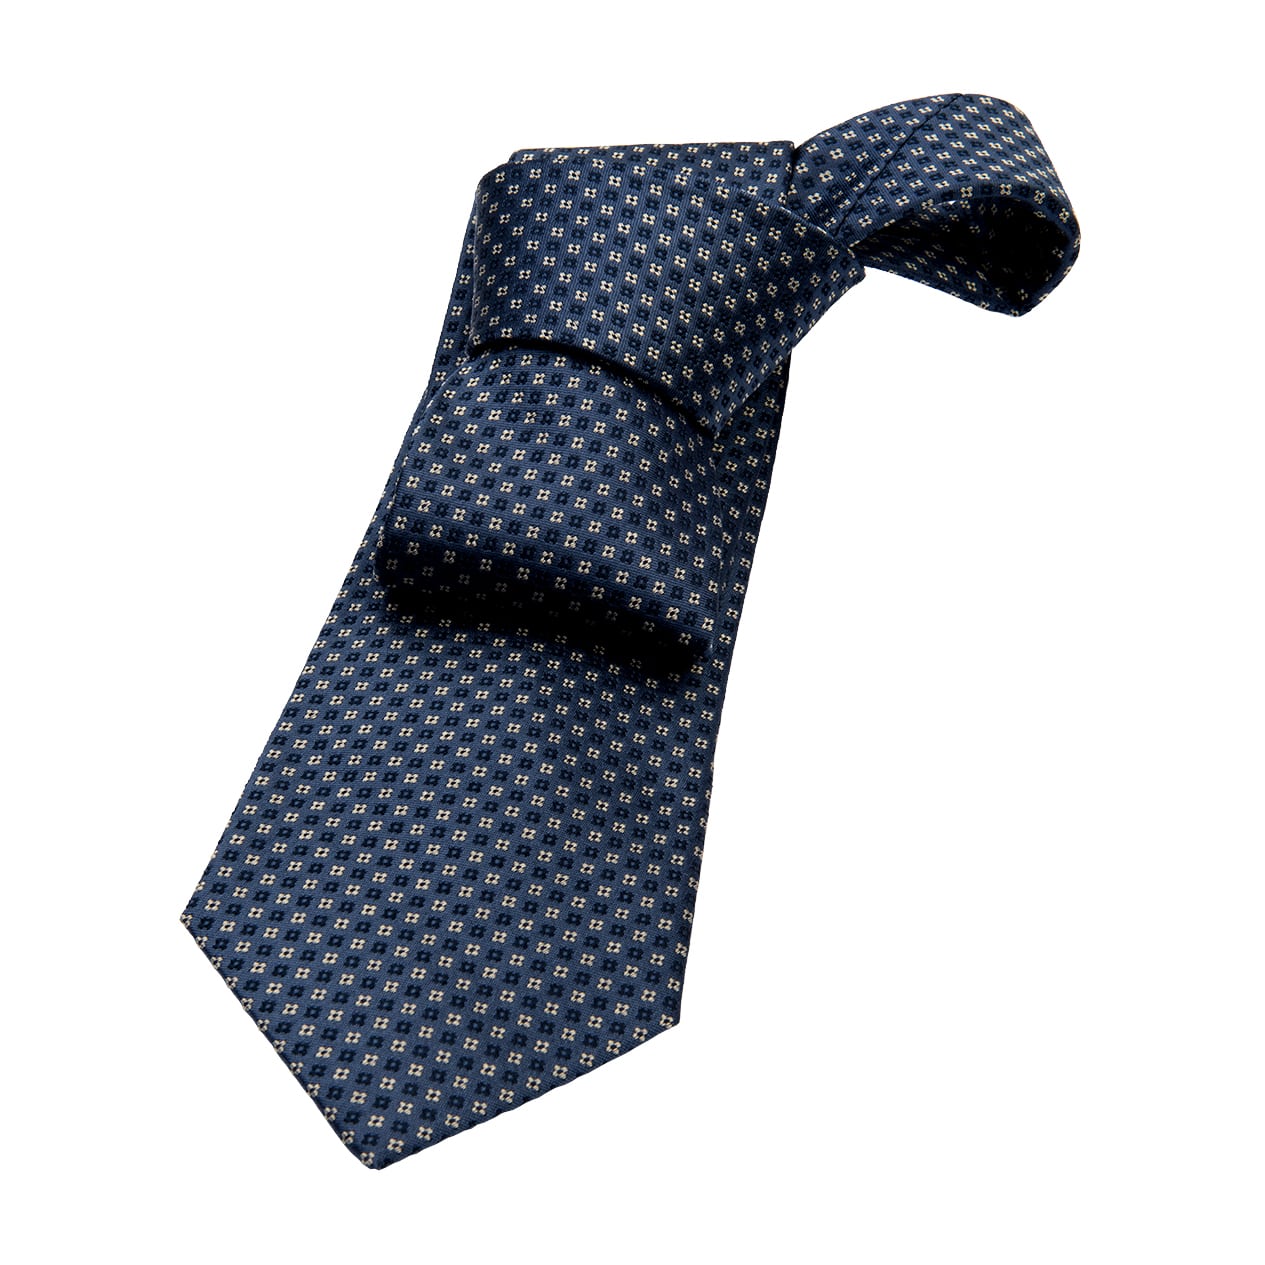 Dorchester Foulard Silk Tie, Bluish Grey / Navy / Silver – The Dark Knot